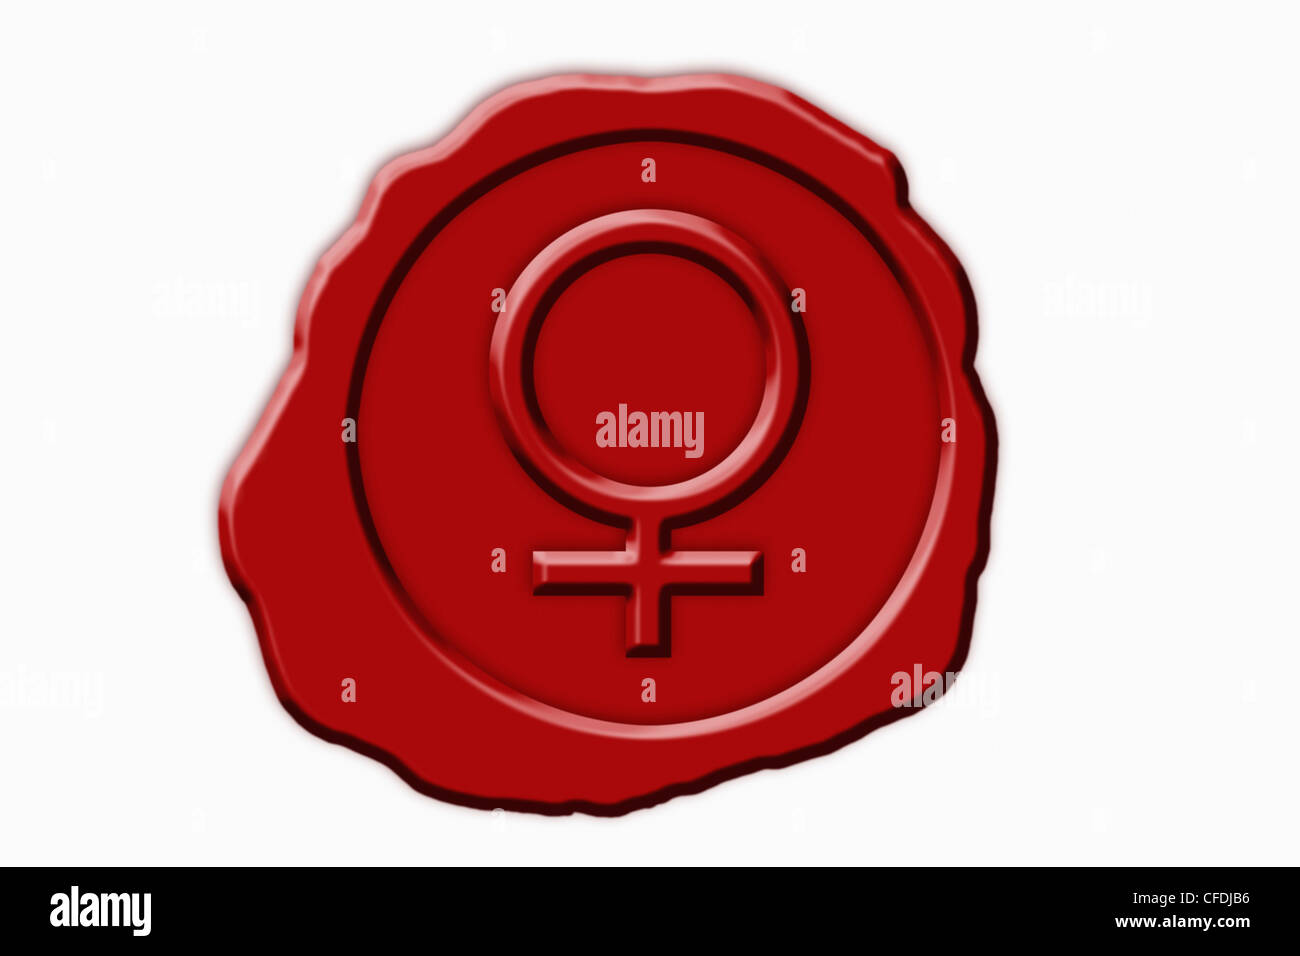 Dettaglio foto di un sigillo rosso con un simbolo femmina in medio Foto Stock